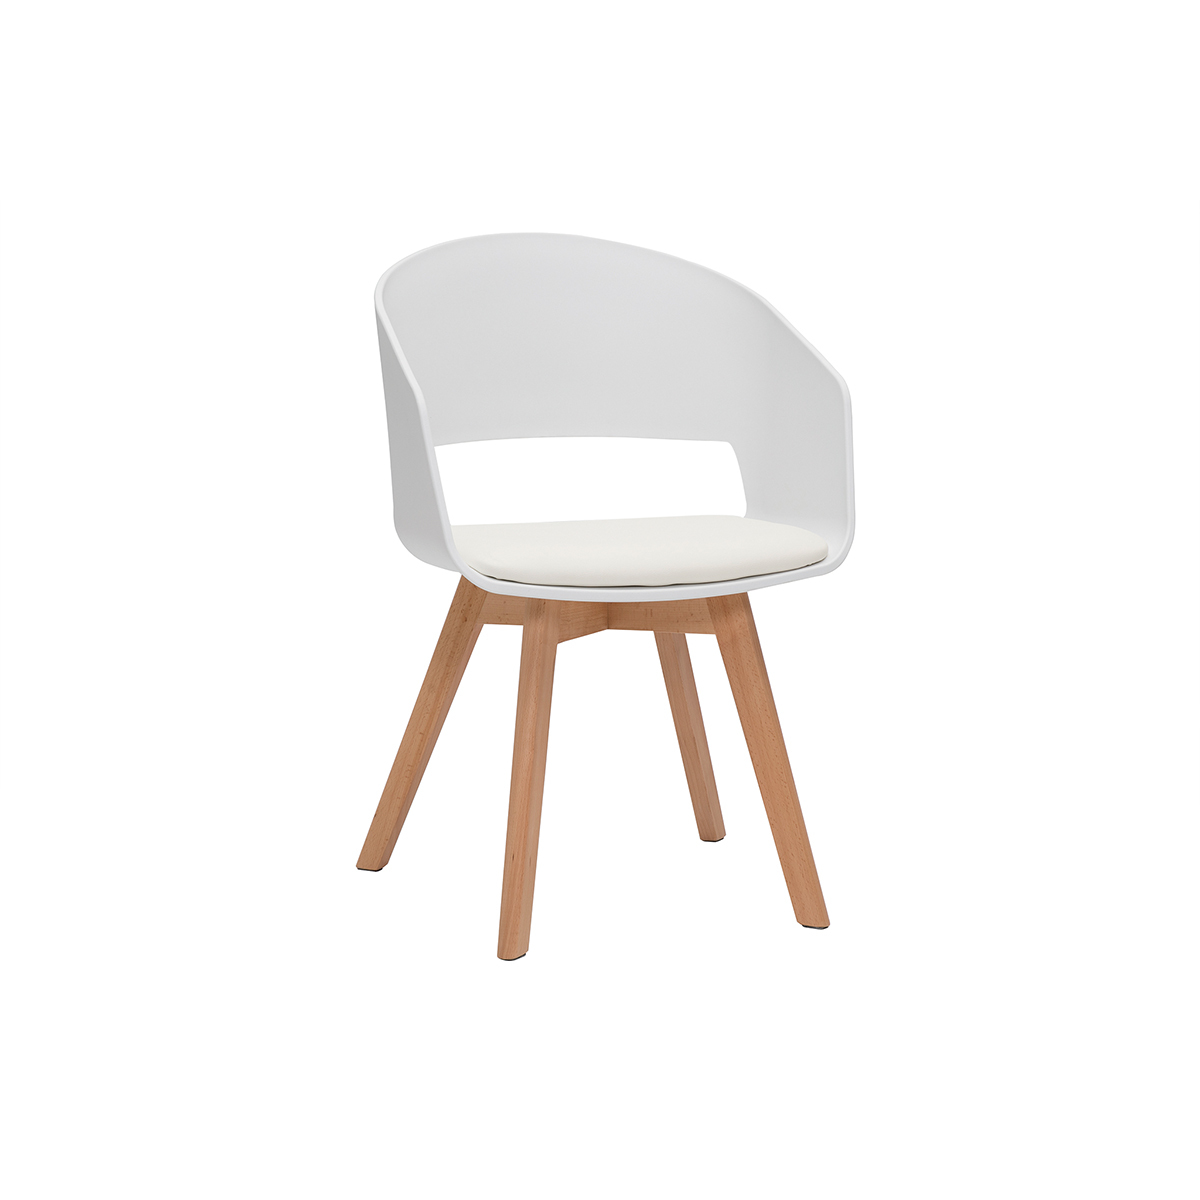 Chaise scandinave blanche et bois clair PRISMA vue1